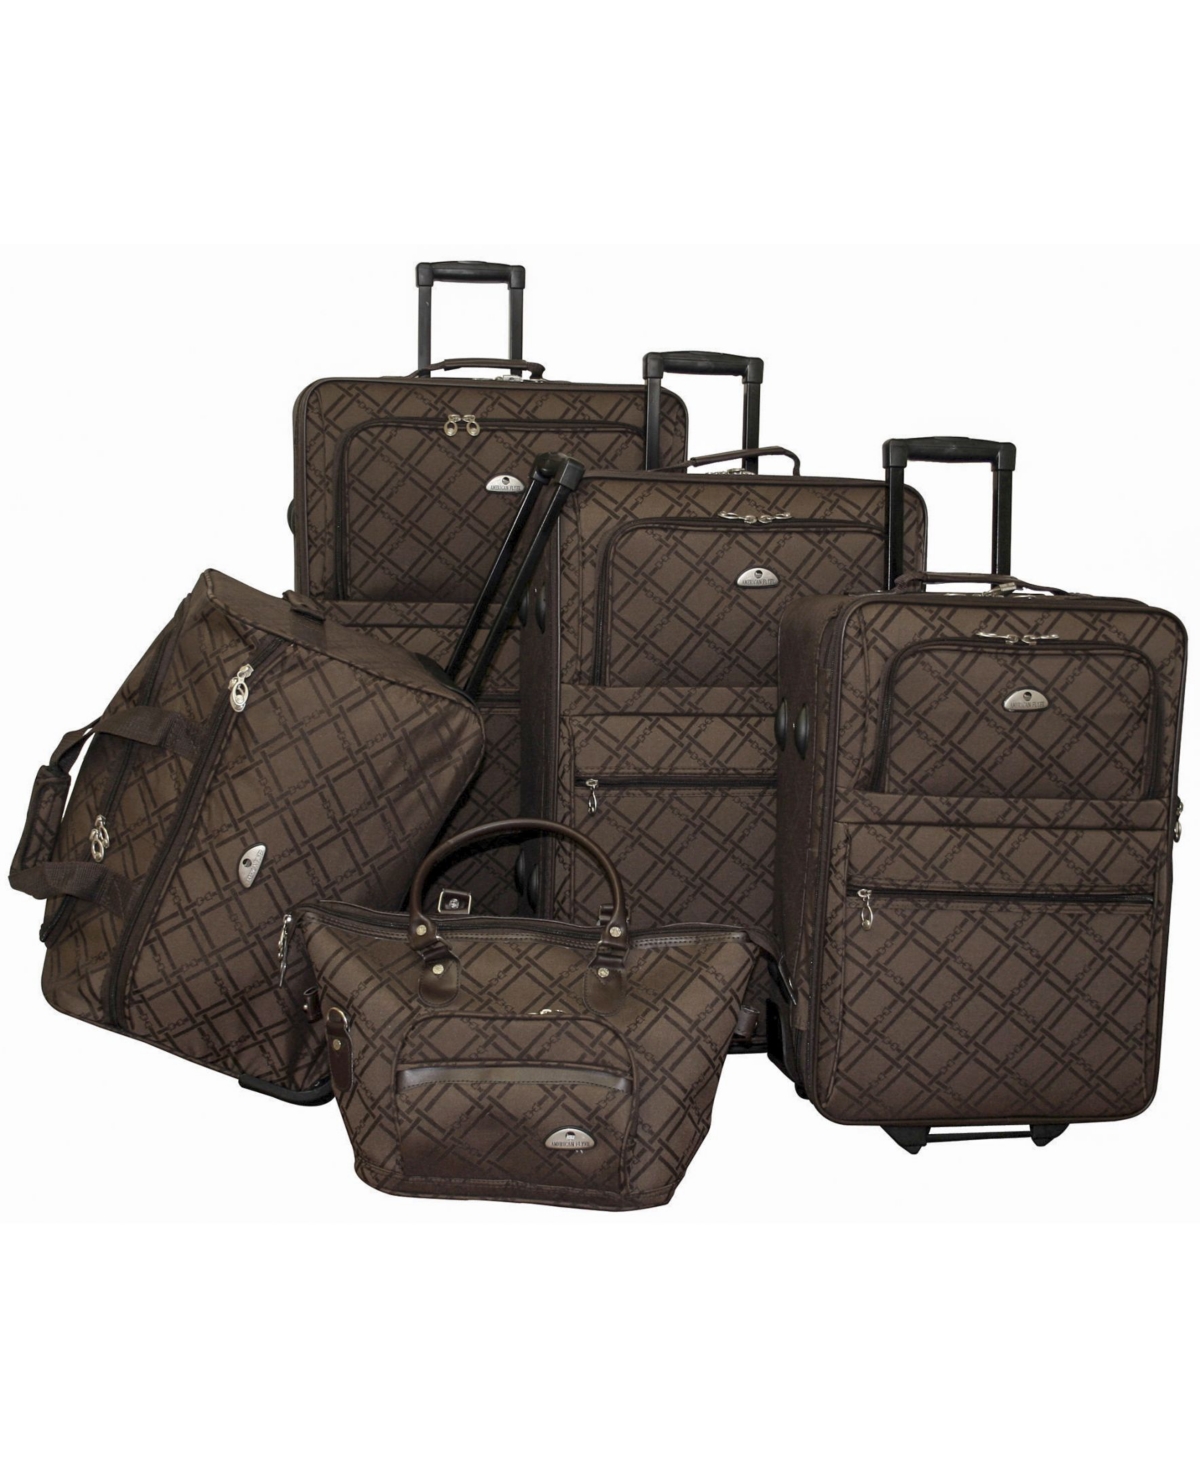 Pemberly Buckles 5 Piece Luggage Set - Dark Brown